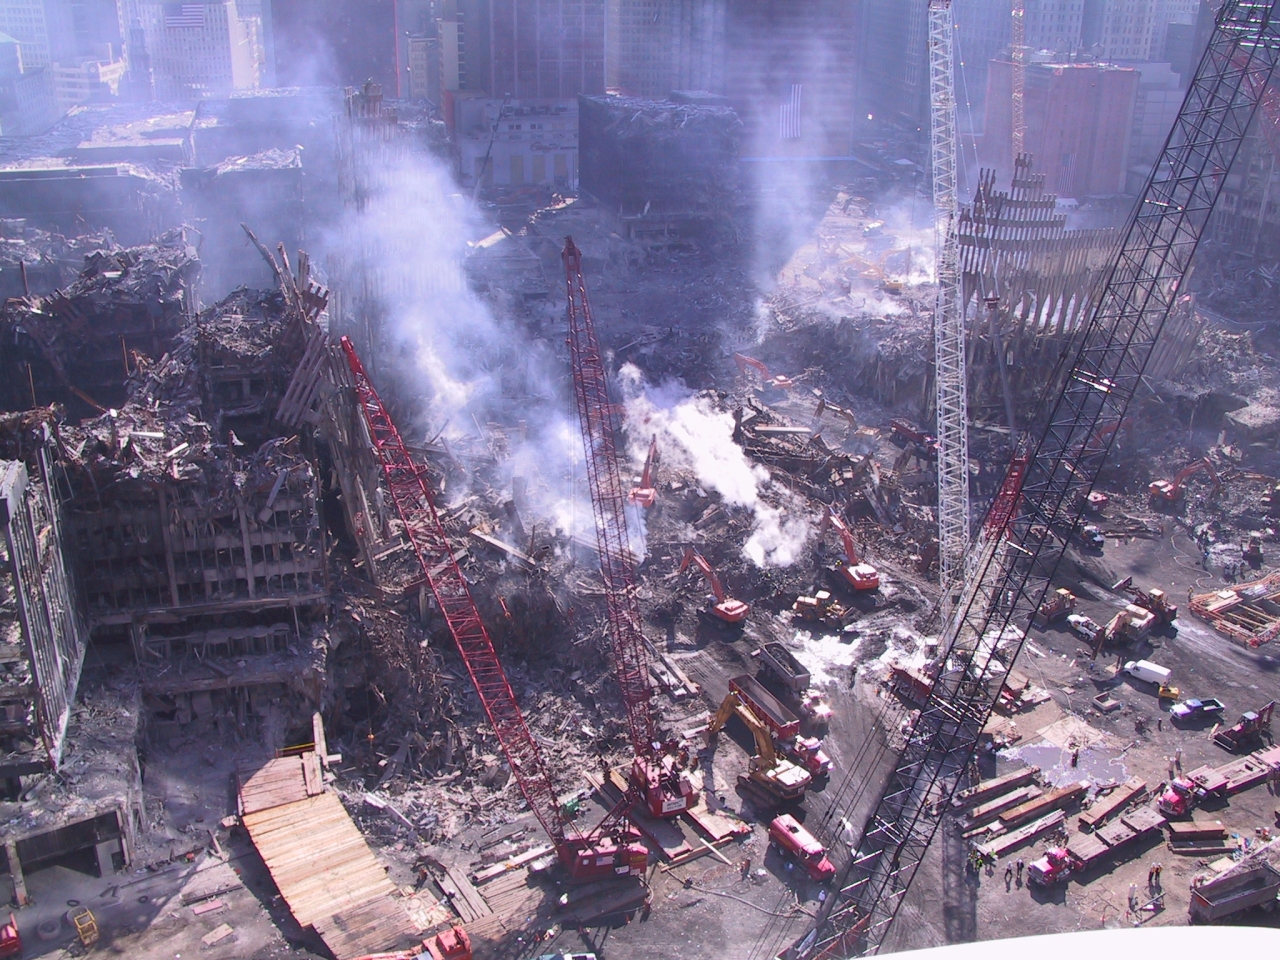 Теракт в 2001 году 11 сентября. Взрыв башен-близнецов в Нью-Йорке 11 сентября. Всемирный торговый центр в Нью-Йорке 11 сентября.